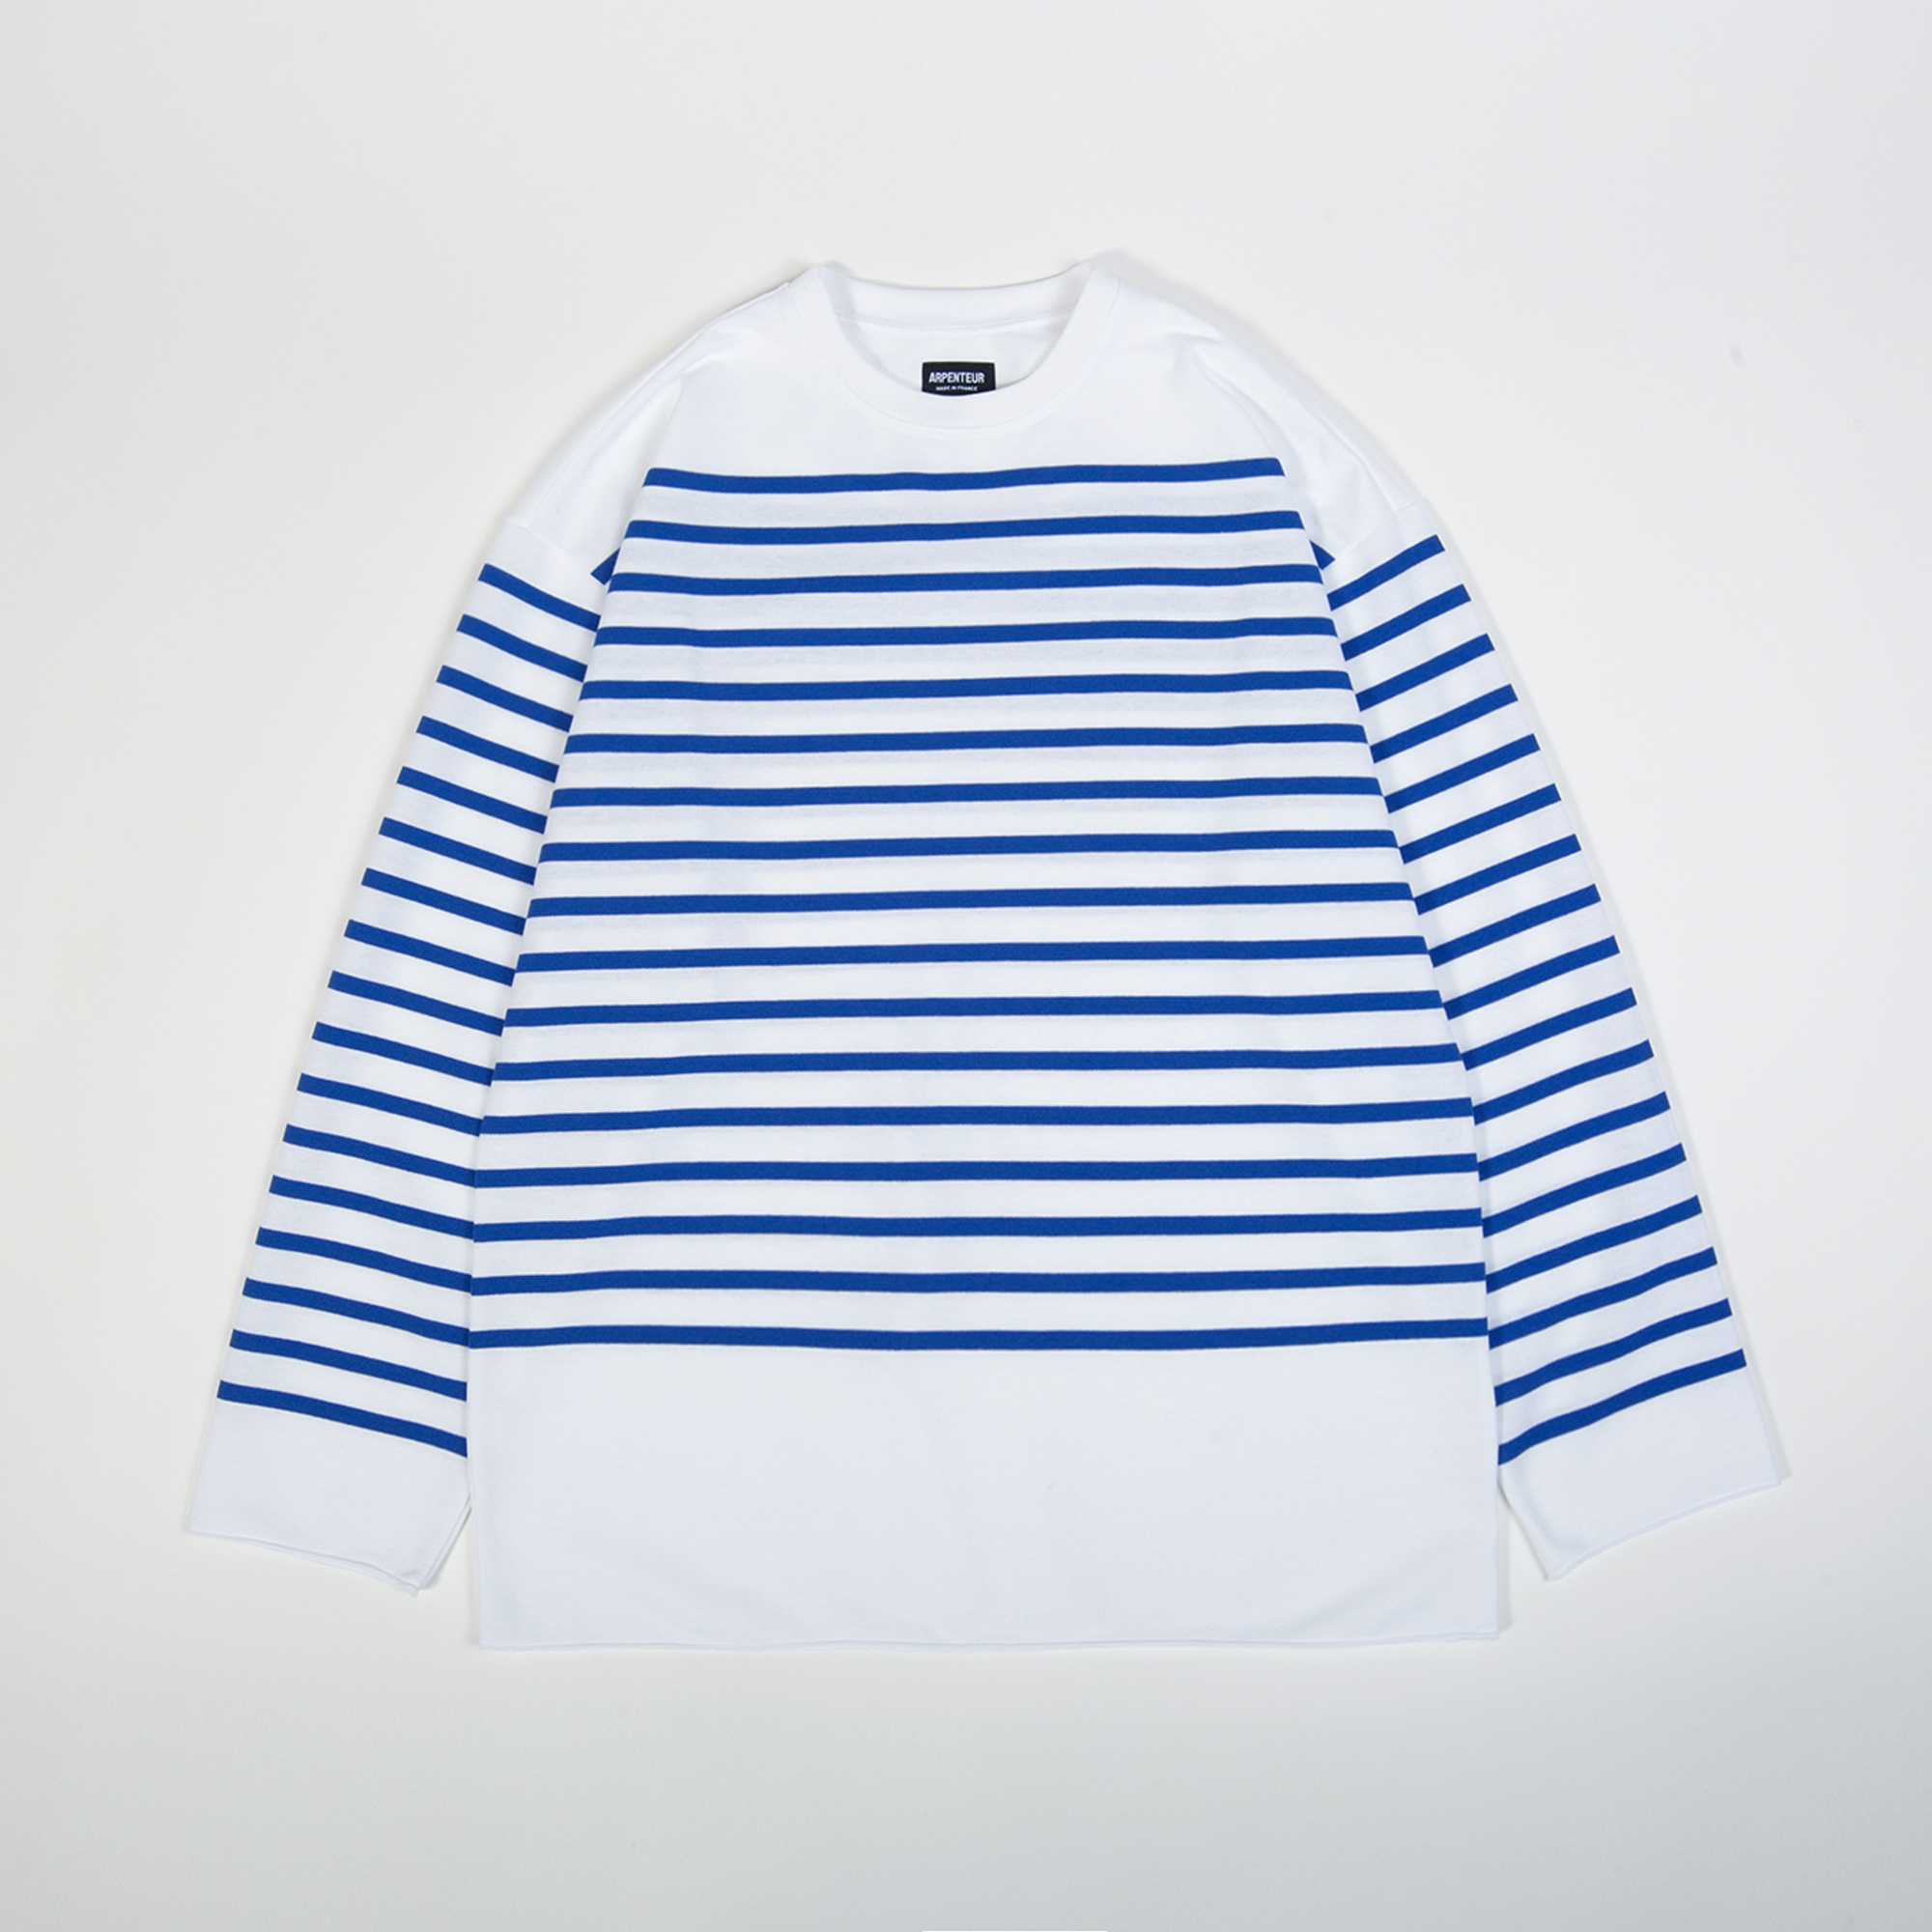 T-shirt MARINE coloris Blanc rayé bleu roy par Arpenteur